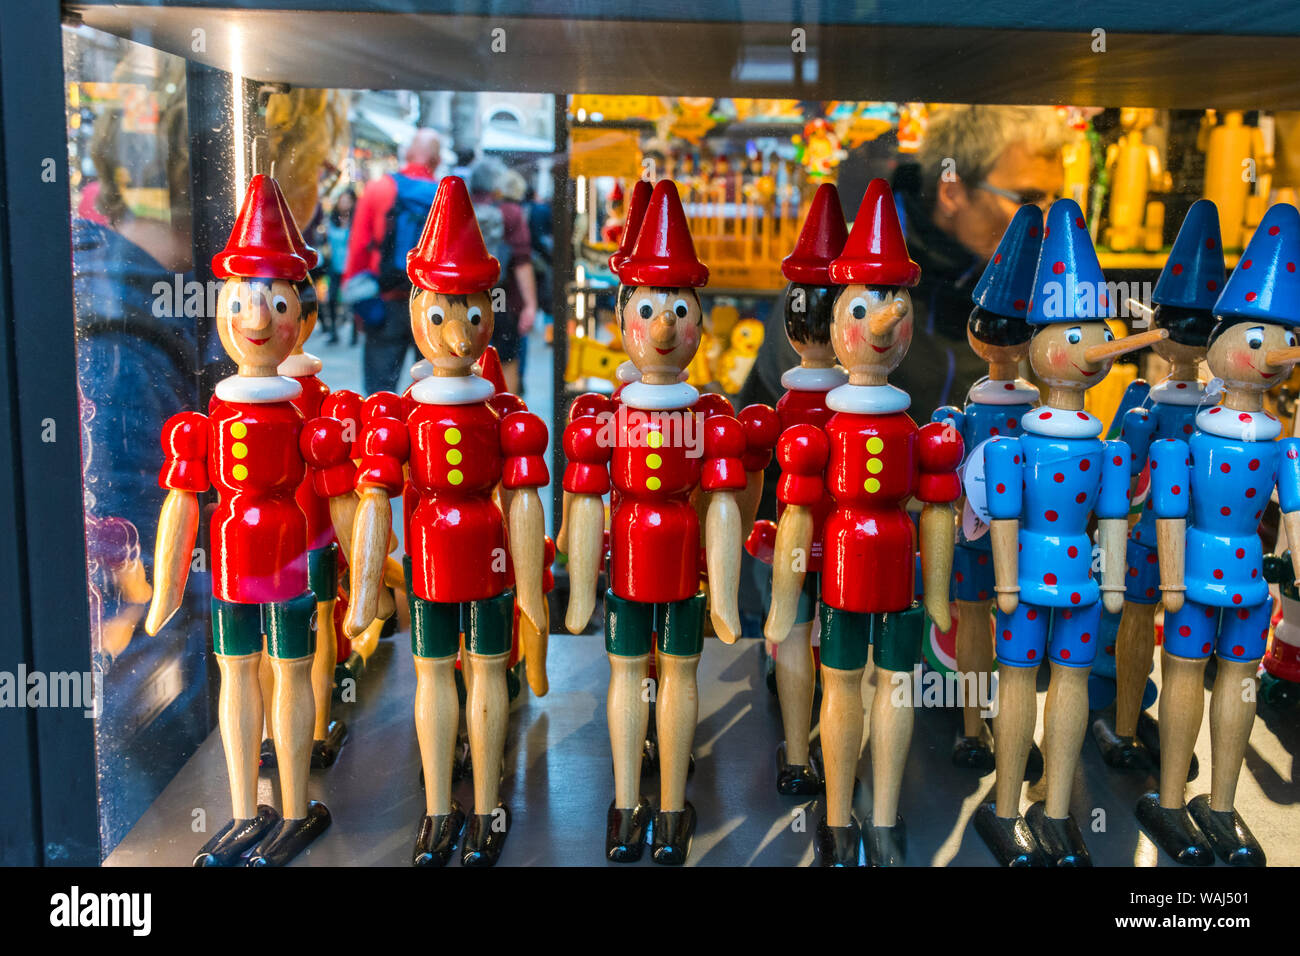 Souvenirs de jouets en bois peint les figures de Pinocchio dans une vitrine, Venise, Italie Banque D'Images